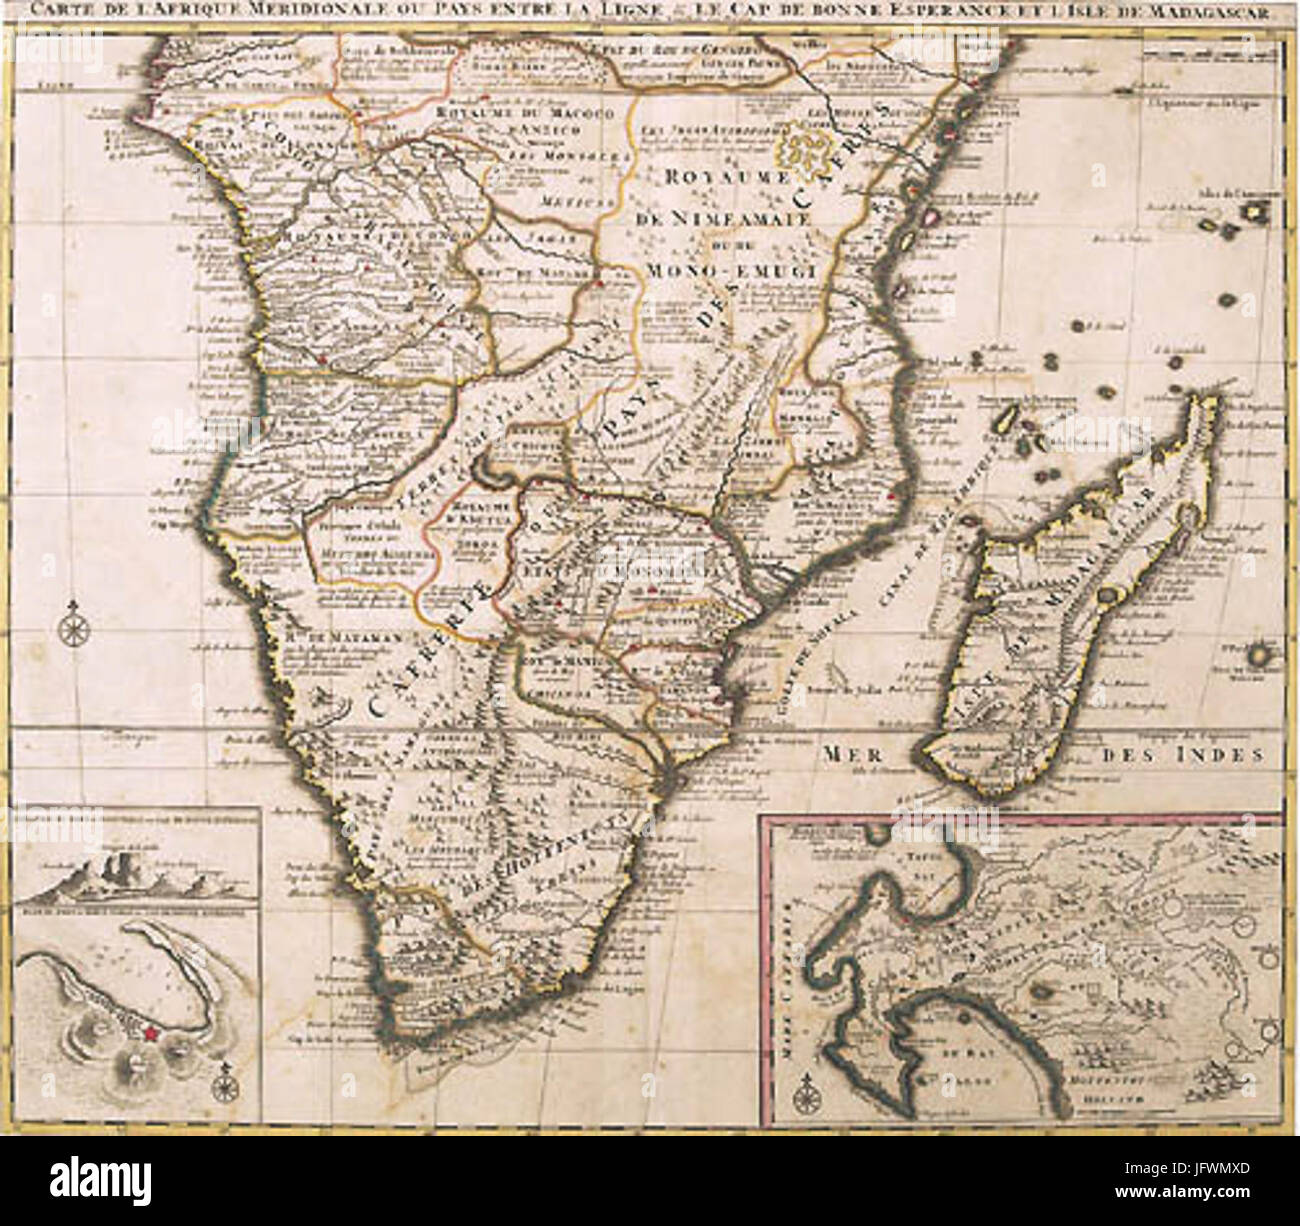 Carte de L Afrique Meridionale 1730 Stock Photo - Alamy